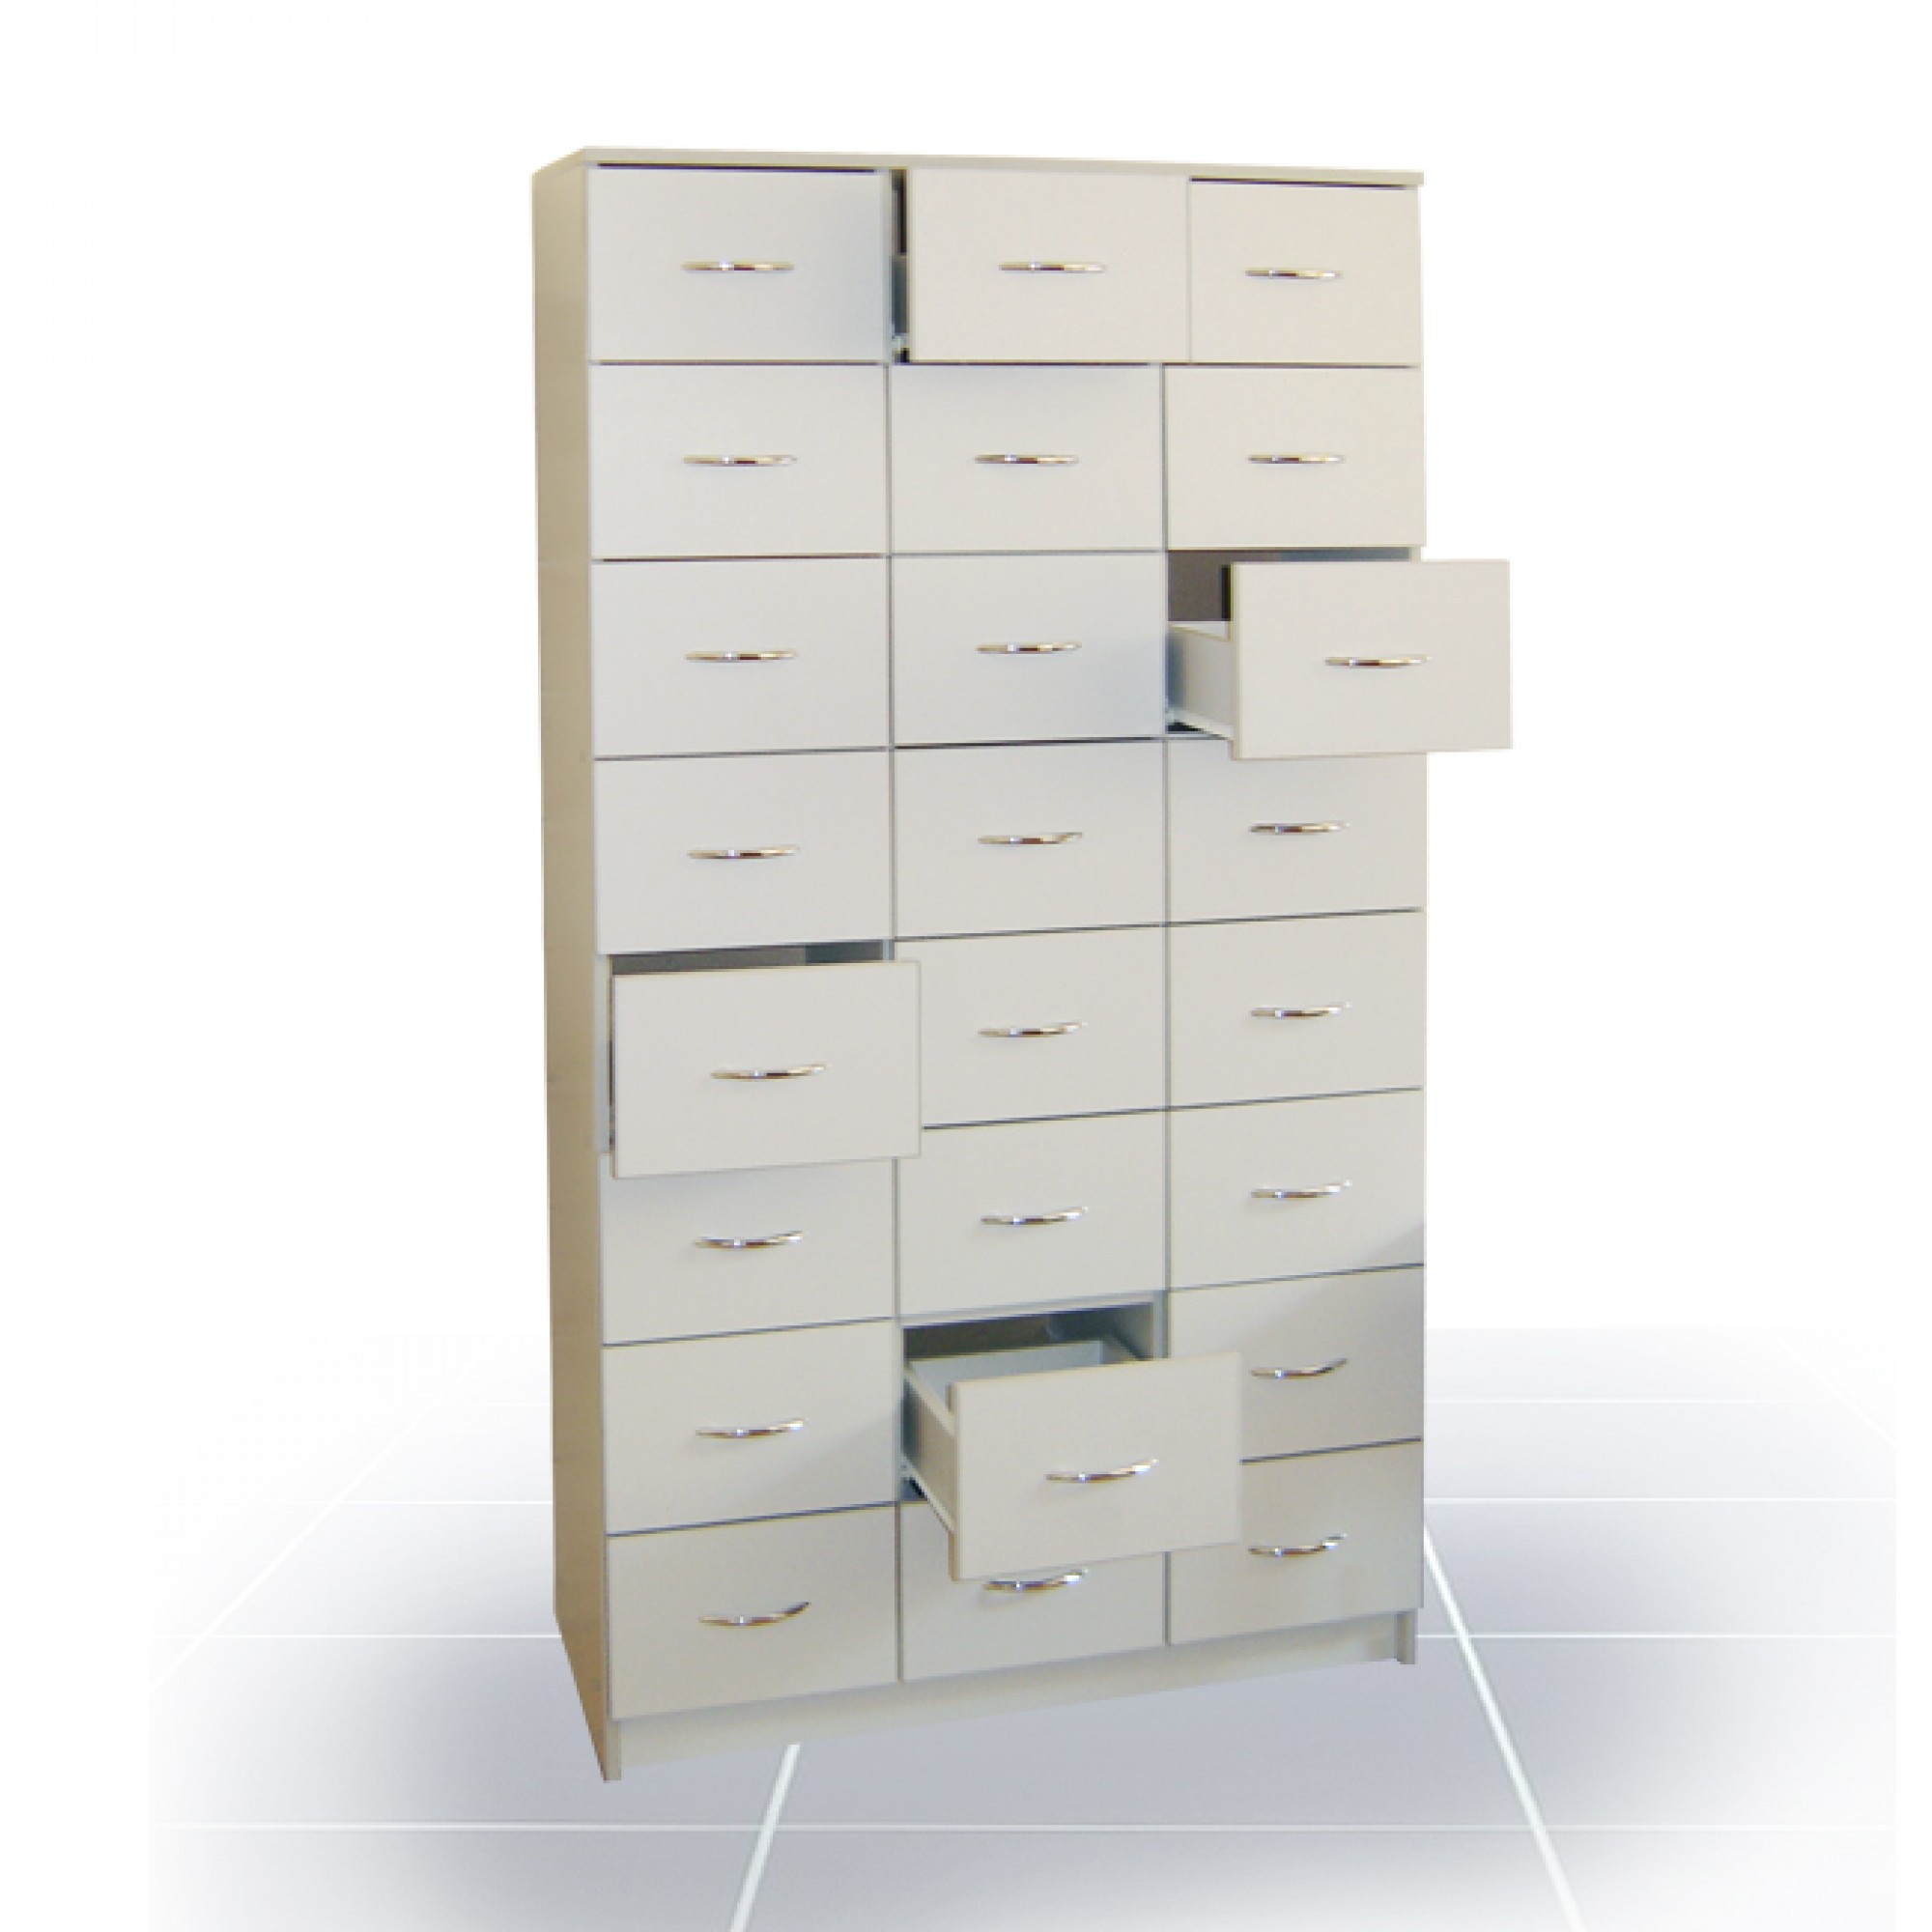 деревянный картотечный шкаф с выдвижными ящиками деревянный